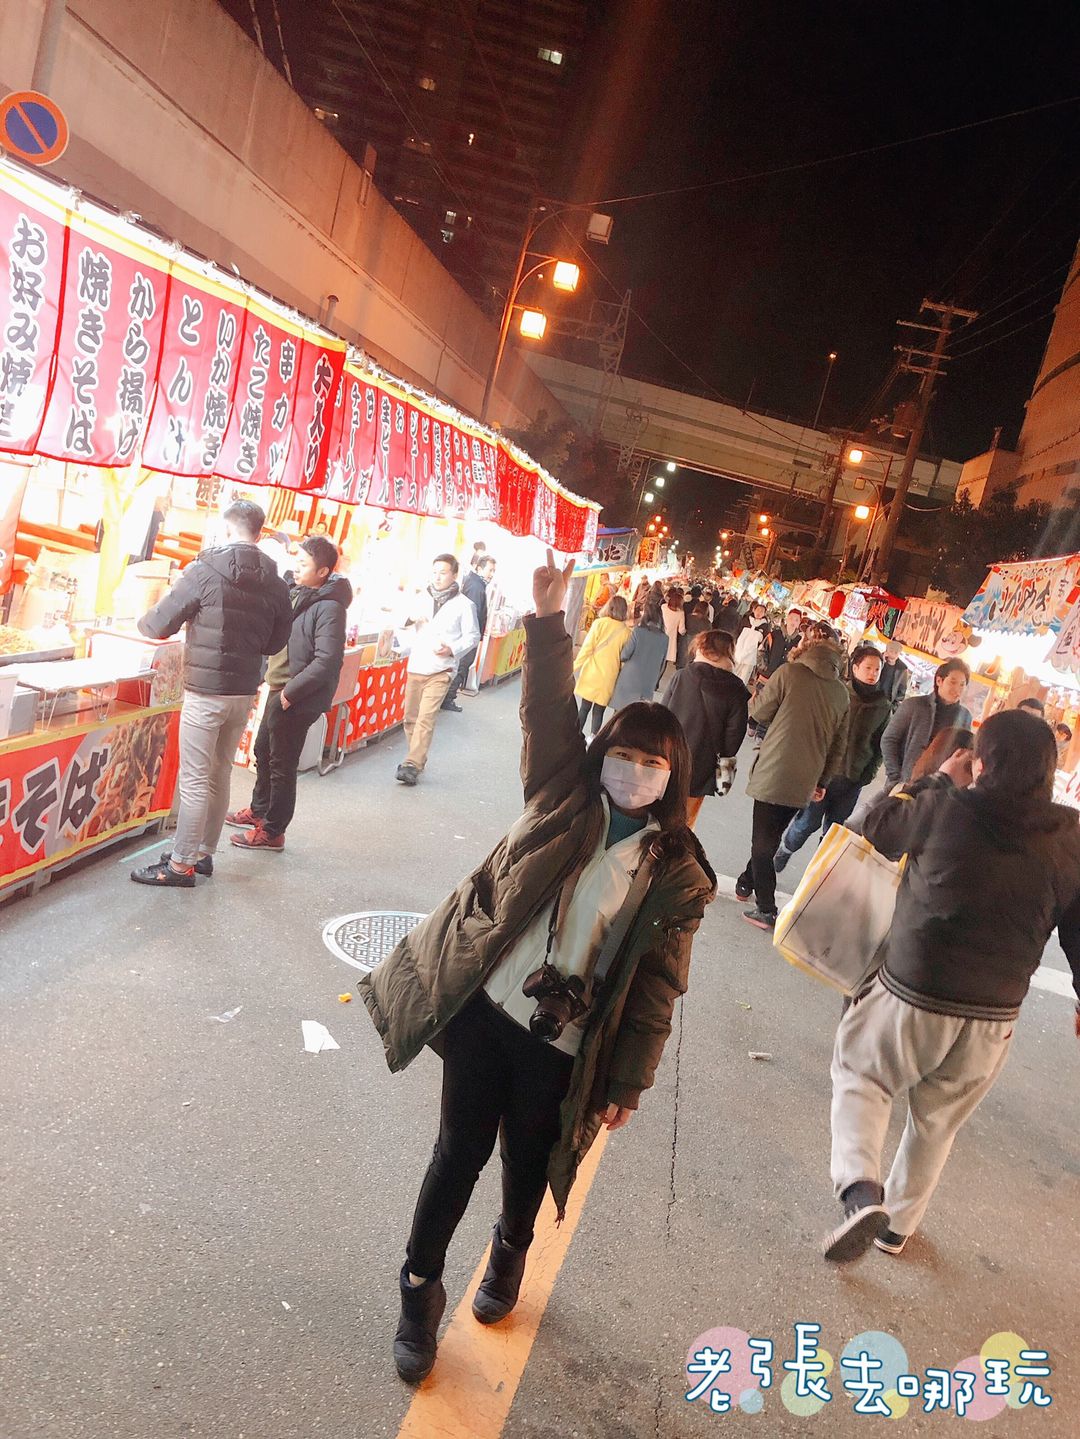 第一天到日本還包得跟粽子一樣，凌晨1點了還是滿滿的人，超級熱鬧